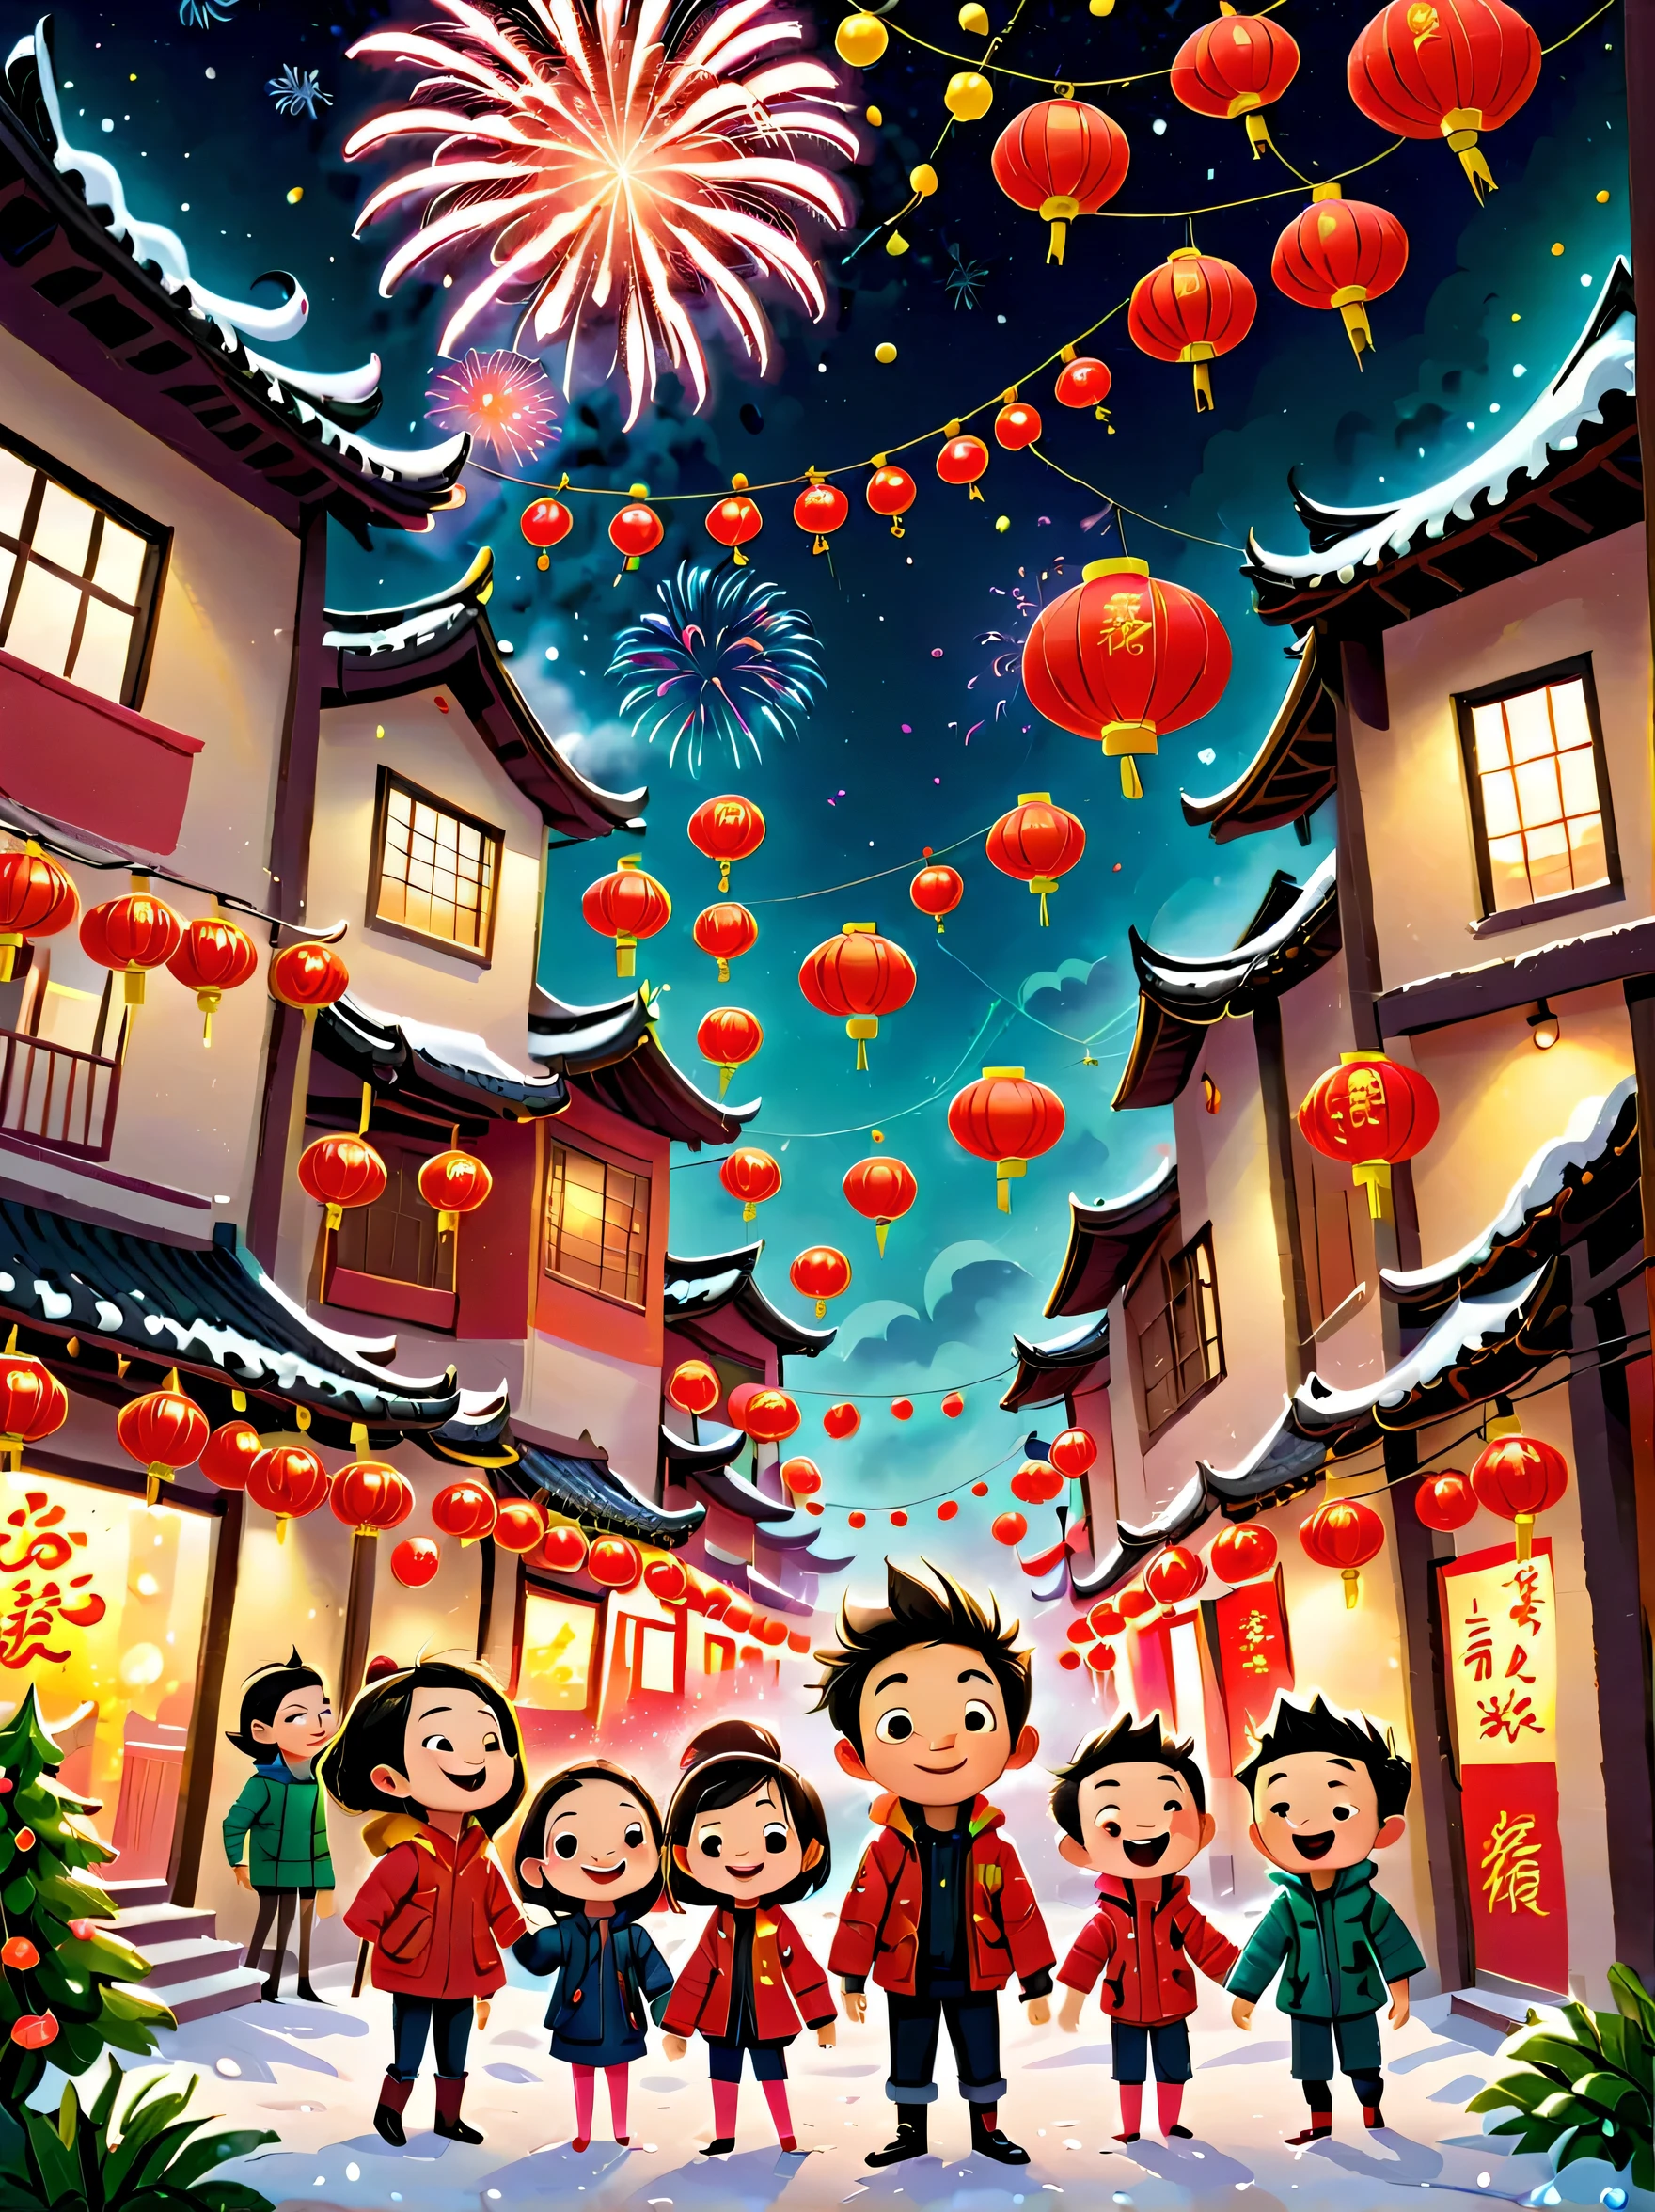 Libros para niños, (Al estilo Tim Burton)，(Las ilustraciones capturan la esencia del Año Nuevo chino)，(ciudad moderna:1.2), (Linternas y adornos)，Está nevando，En el ambiente alegre del Año Nuevo.，(Cinco niños vestidos con chaquetas de plumas lanzaron petardos)，(Hay muchos fuegos artificiales en el cielo.)，la foto era hermosa，(Niños detallados y vívidos.&#39;ilustraciones dibujadas a mano)，mostrar personas&#39;expresiones